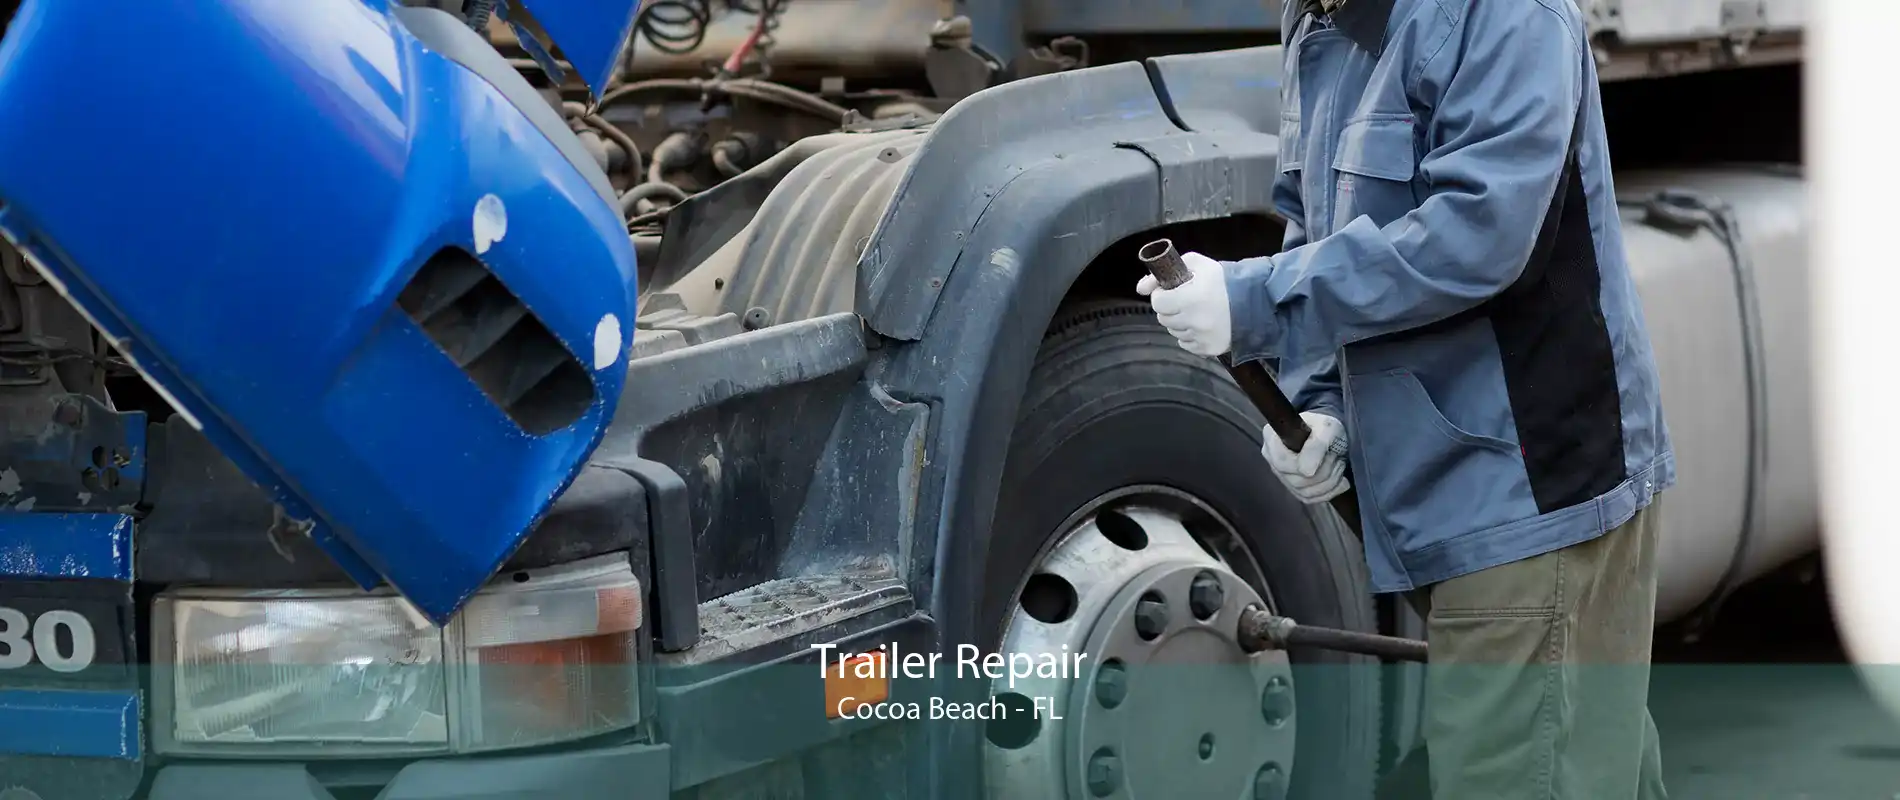 Trailer Repair Cocoa Beach - FL